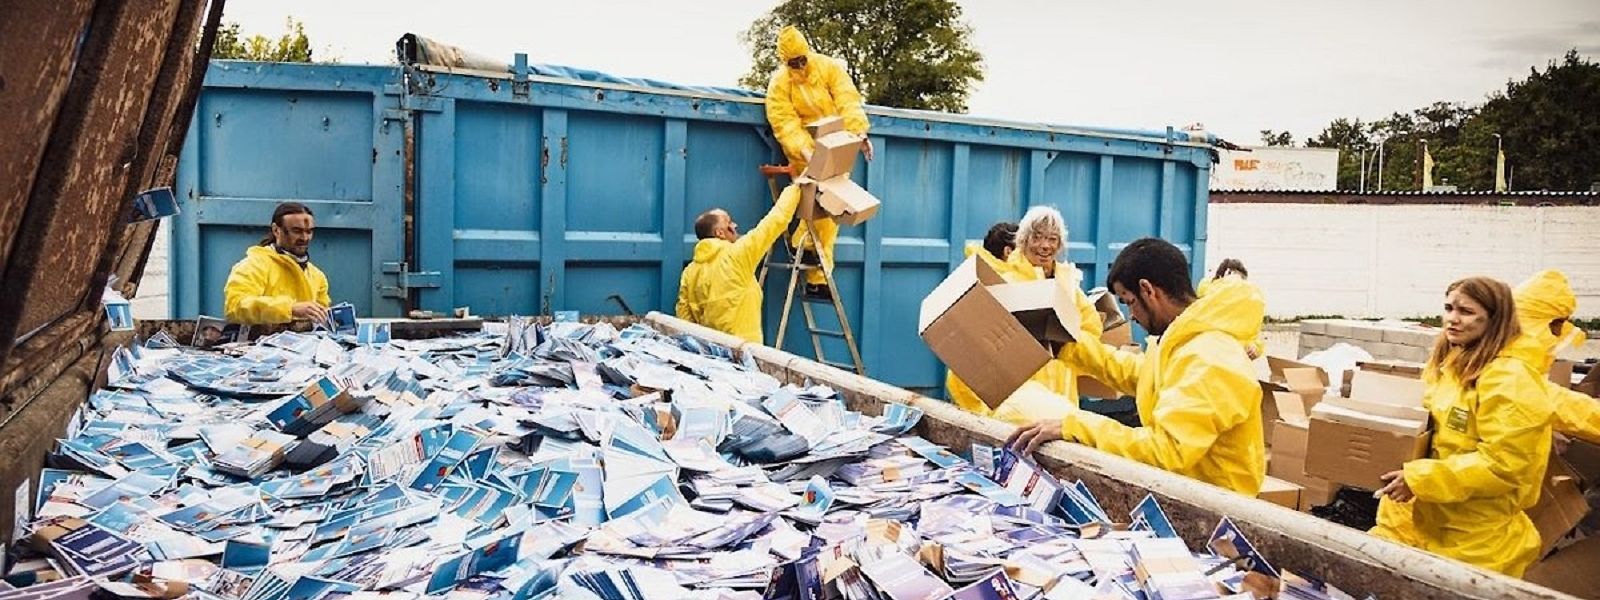 Ein Foto von der Website der Aktionskünstler: Tausende AfD-Flyer im Container.